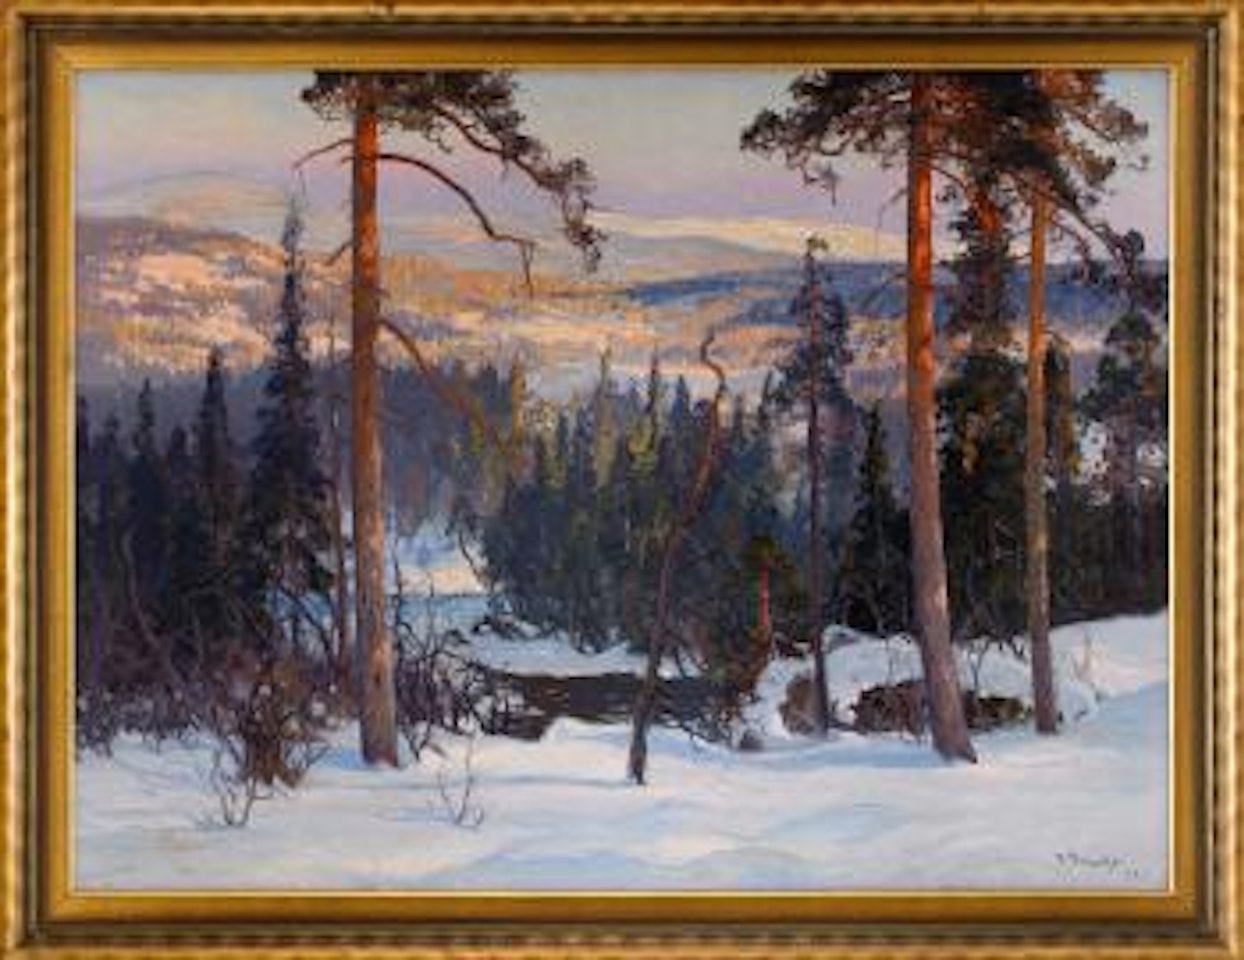 Norrländskt vinterlandskap by Carl Brandt